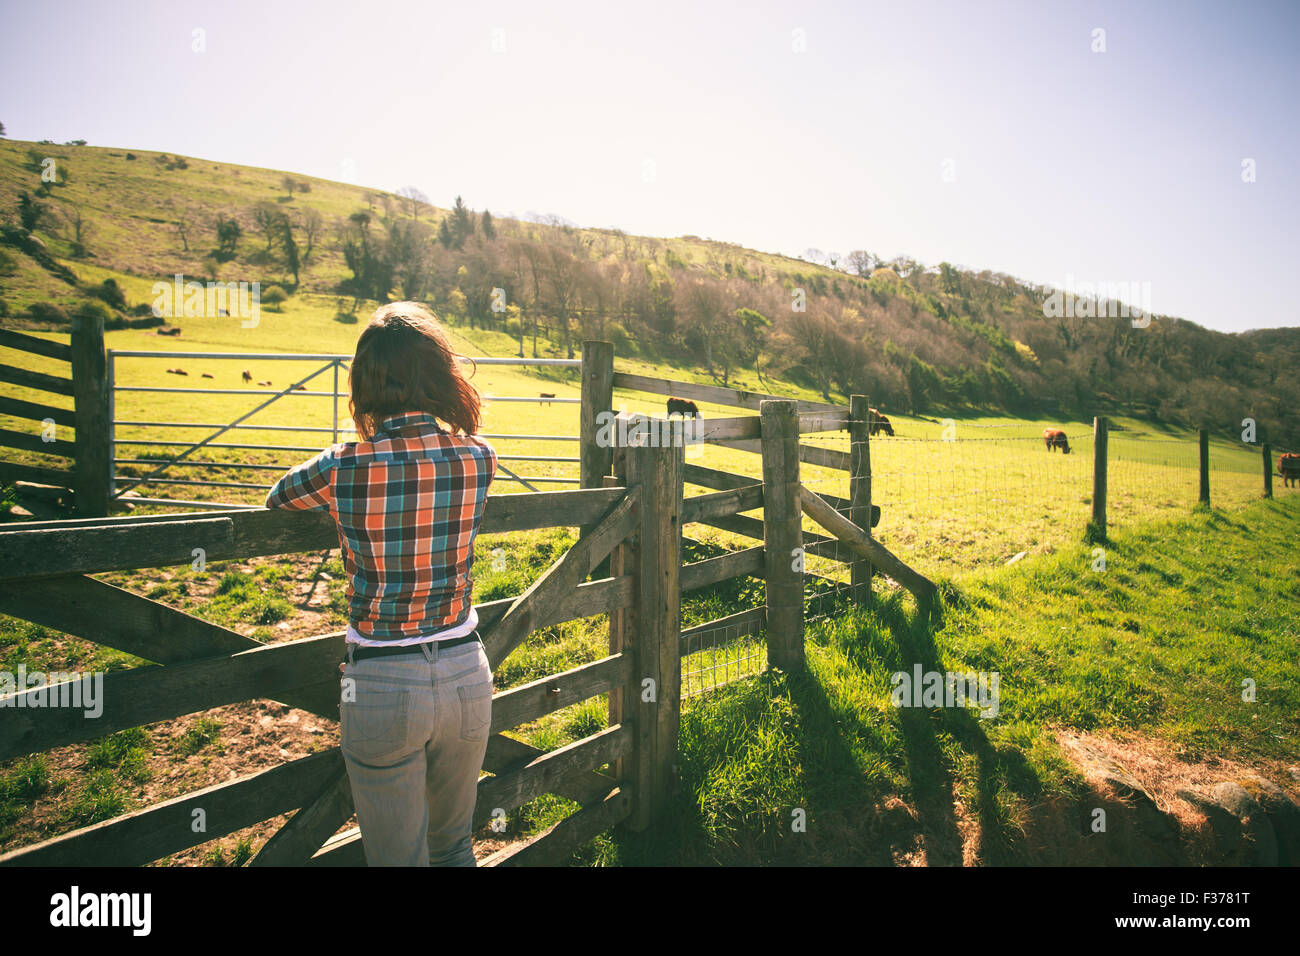 Junge Frau ist von einem Zaun auf einer Ranch mit Rindern in der Ferne stehen. Stockfoto